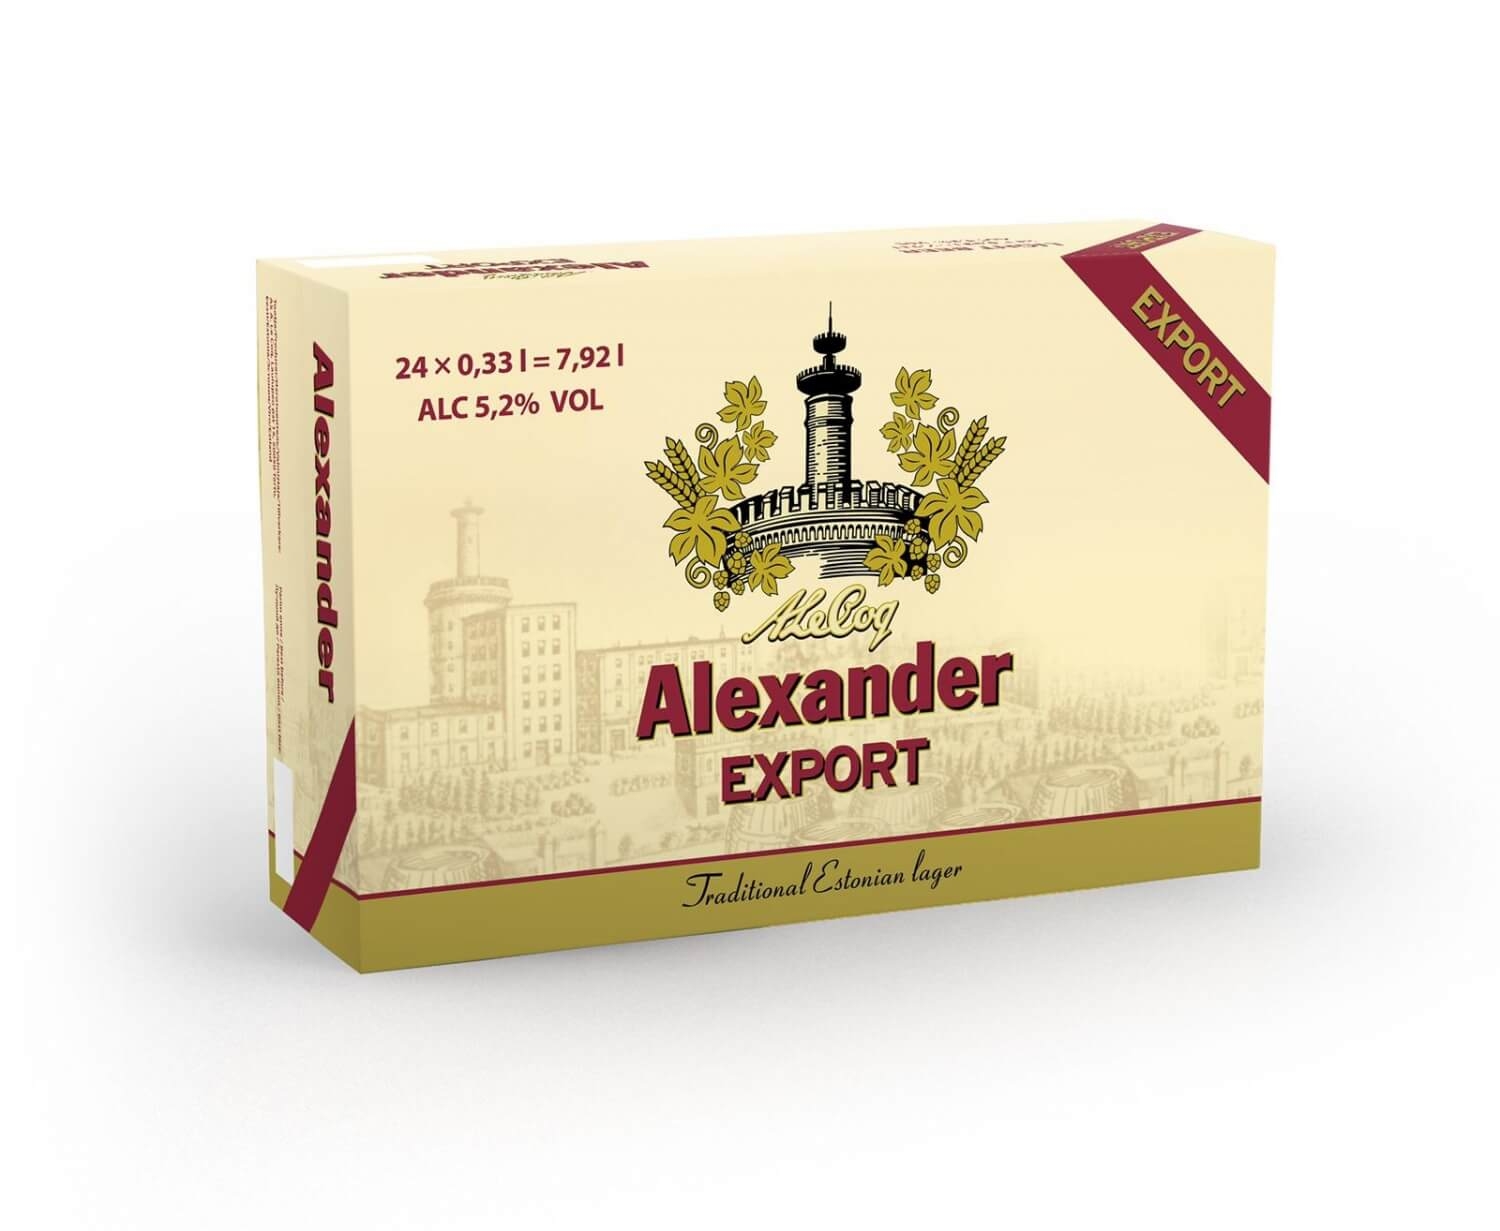 Alexander Export 24x33cl 5.2%